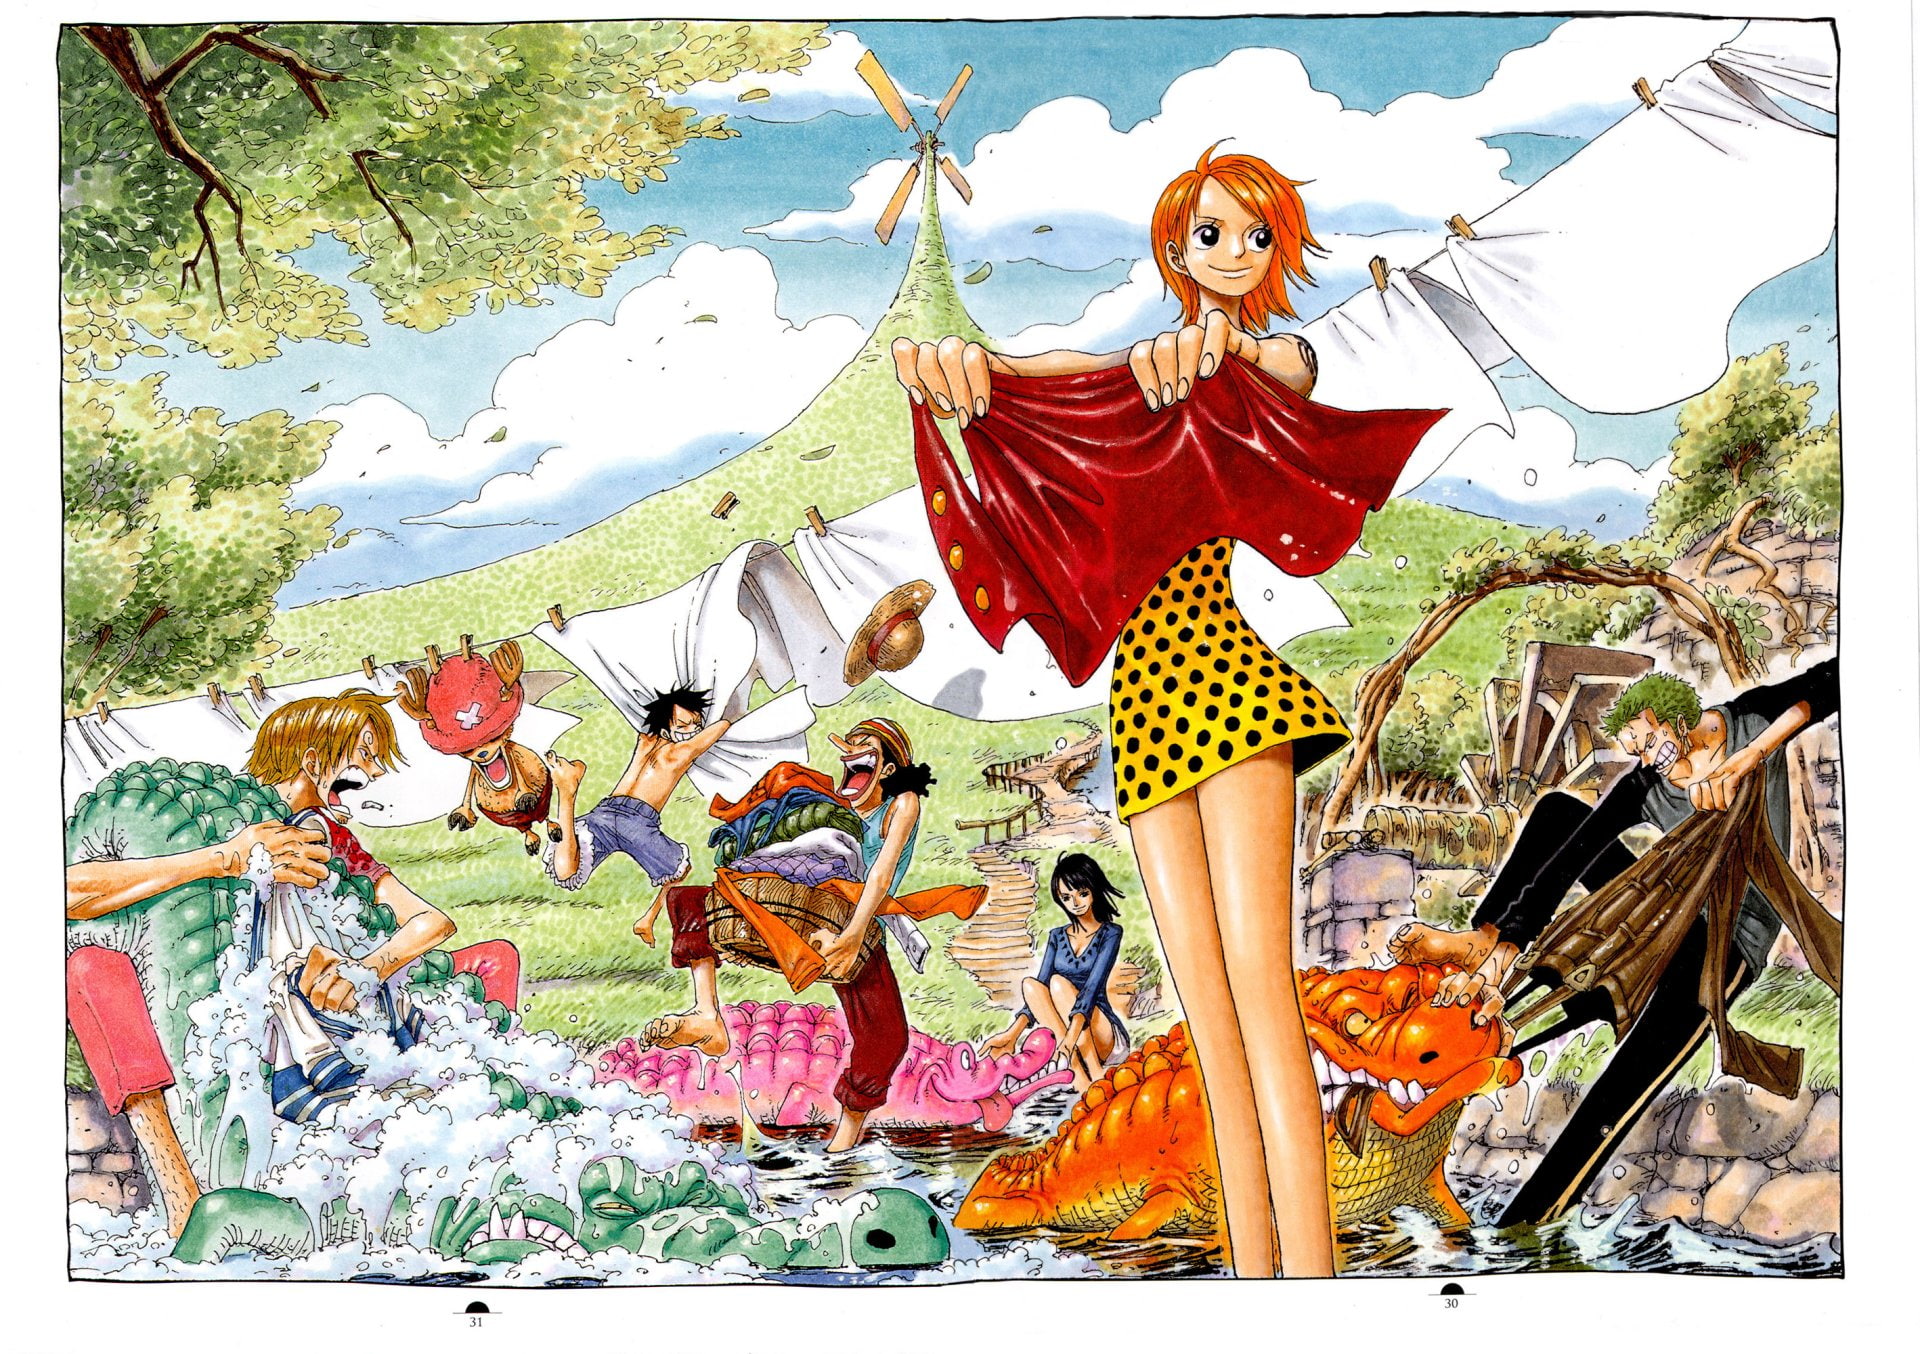 Anime, One Piece, Monkey D. Luffy, Nami (One Piece), Nico Robin